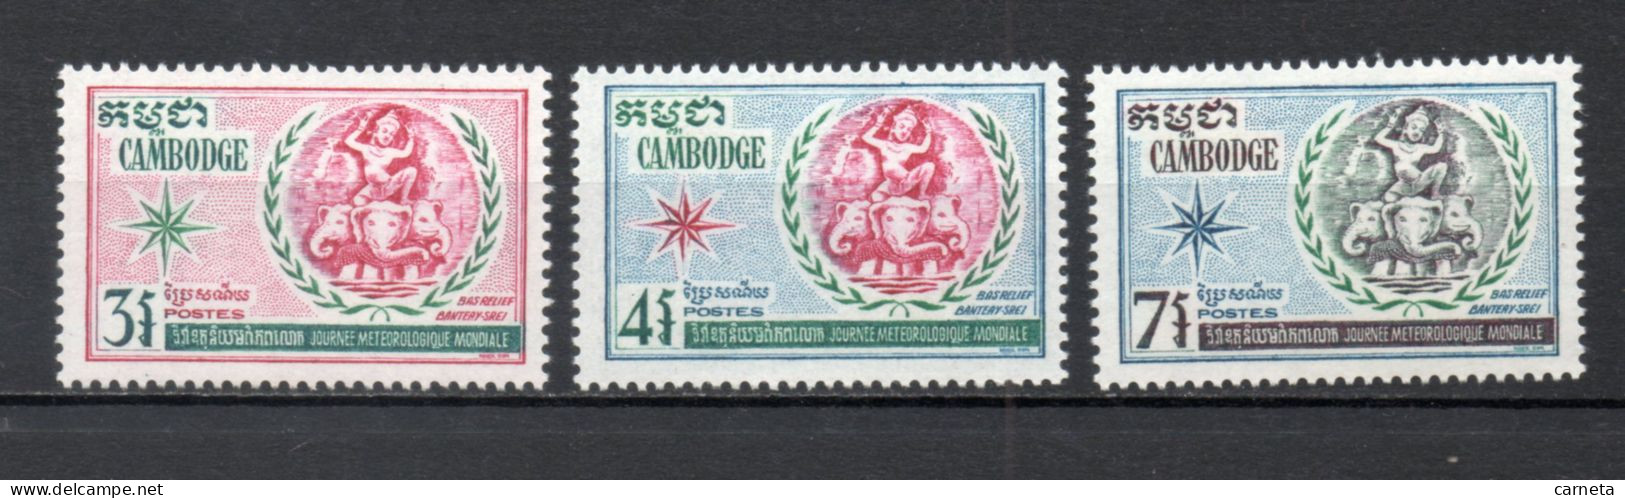 CAMBODGE  N° 249 à 251   NEUFS SANS CHARNIERE   COTE  2.00€    METEOROLOGIE - Kambodscha